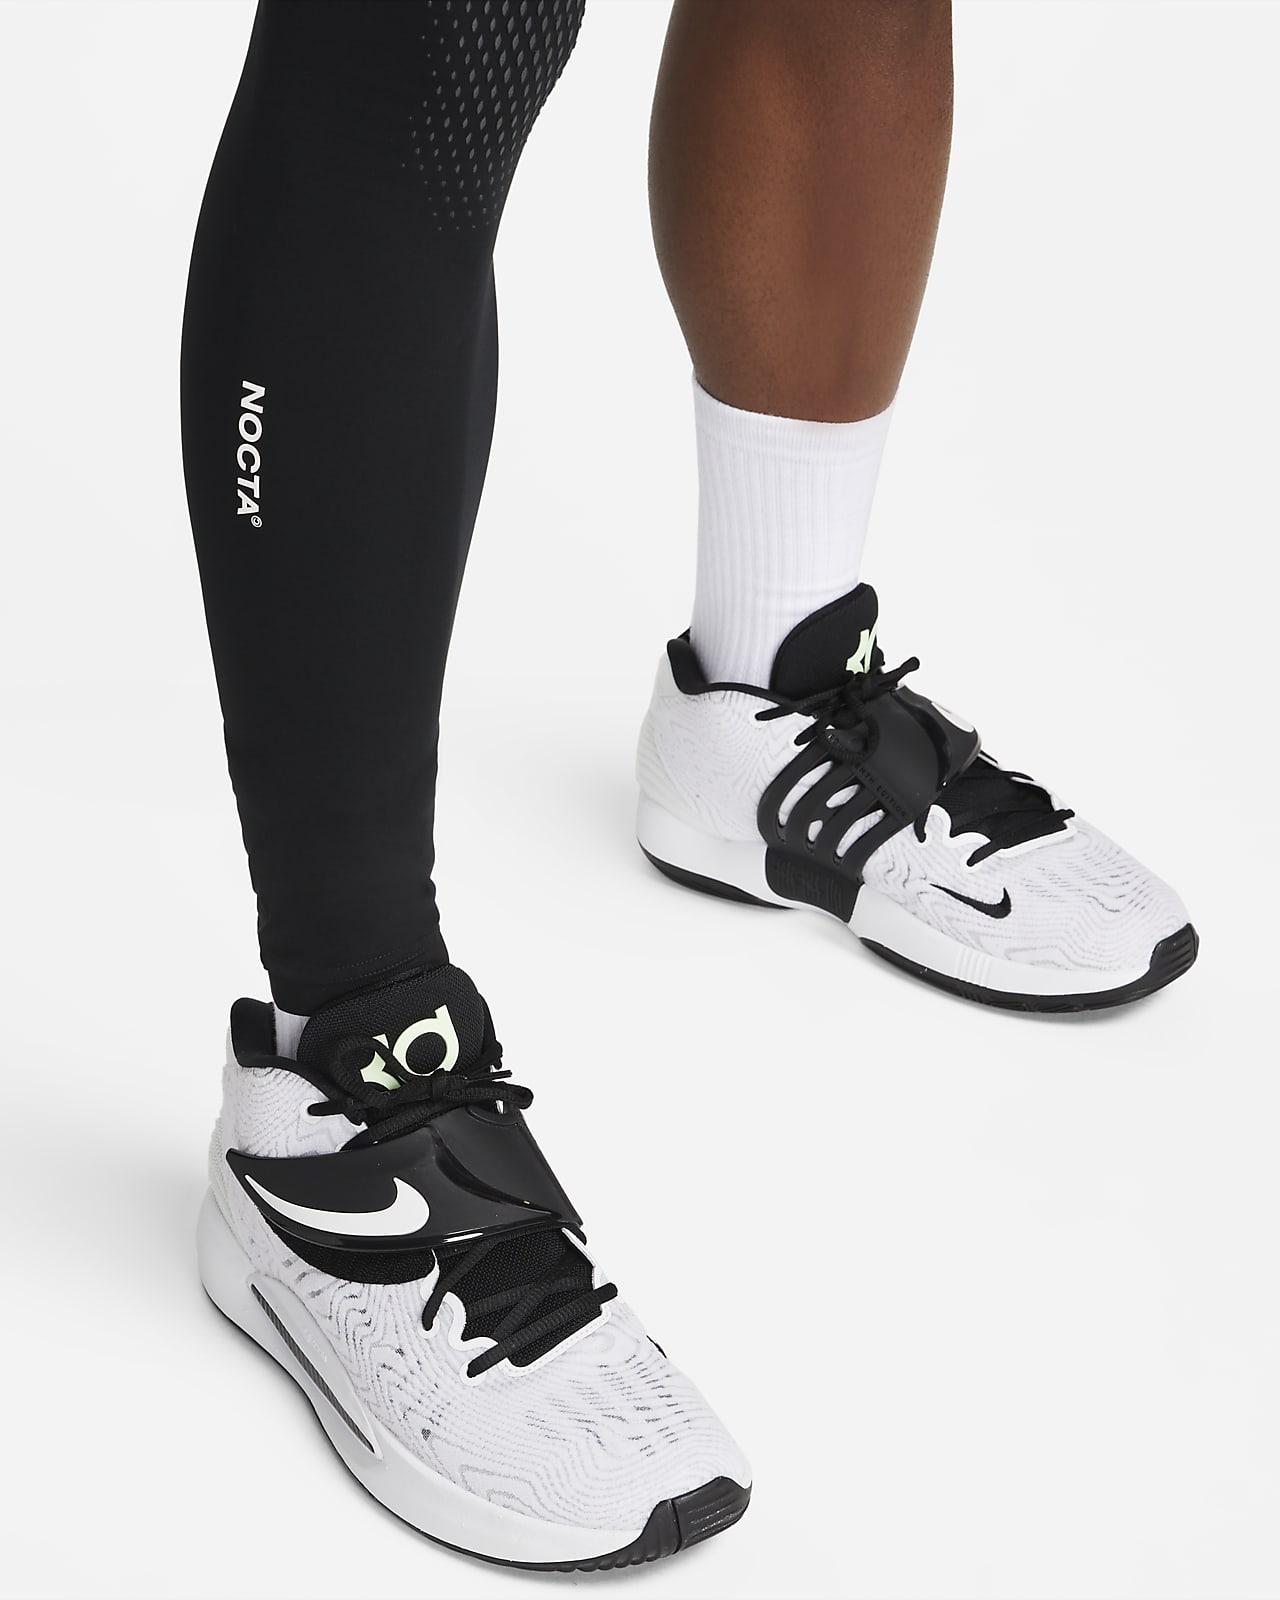 NEW Nike x Drake NOCTA Single Leg Tights Thermal Left leg